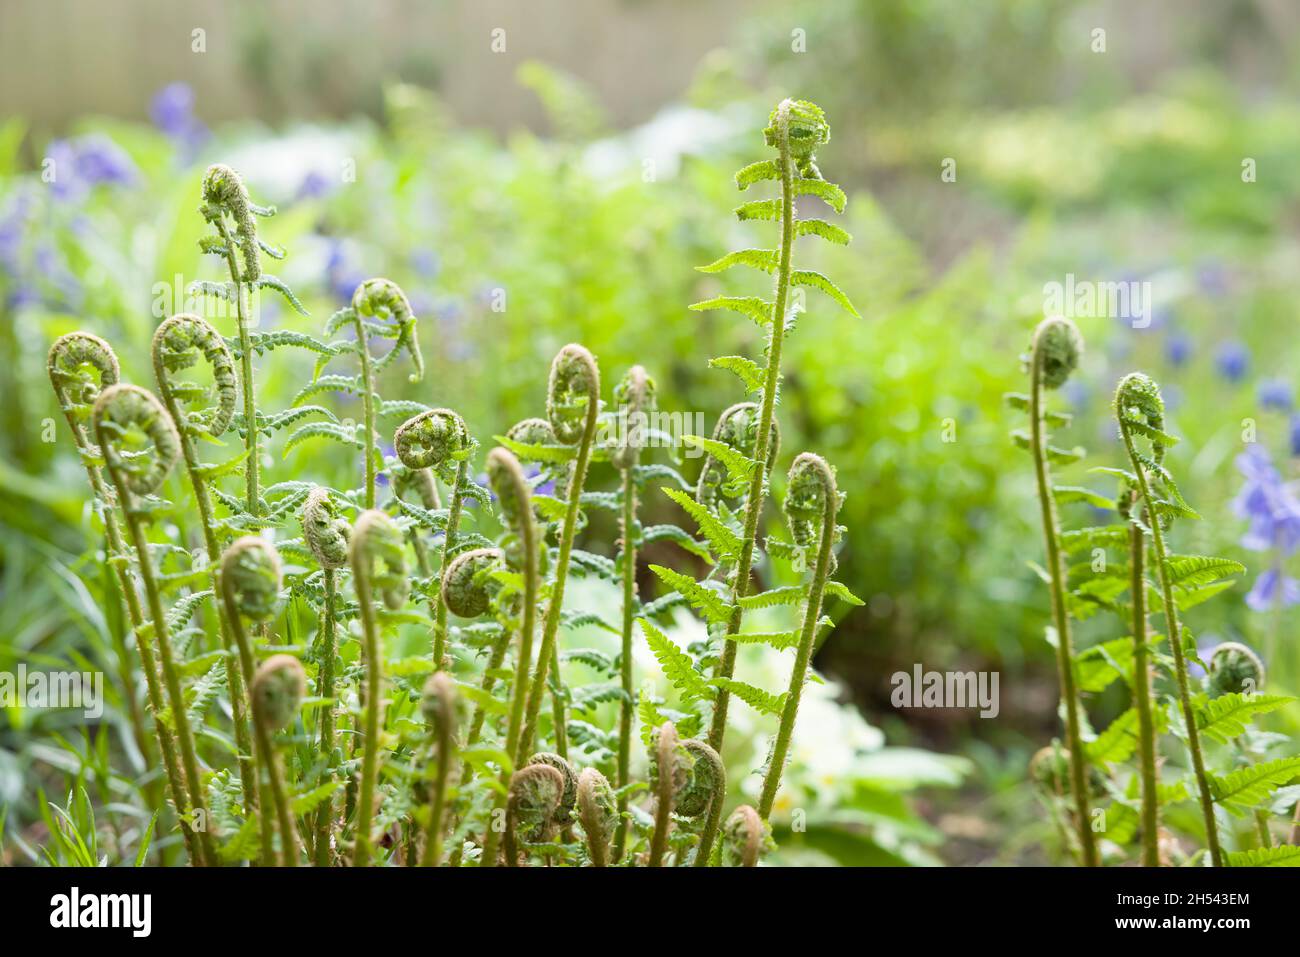 Fougères, gros plan sur de nouvelles frondes ou têtes de violon poussant sur une plante dans un jardin britannique au printemps.Dryopteris filix mas (fougère en bois) Banque D'Images